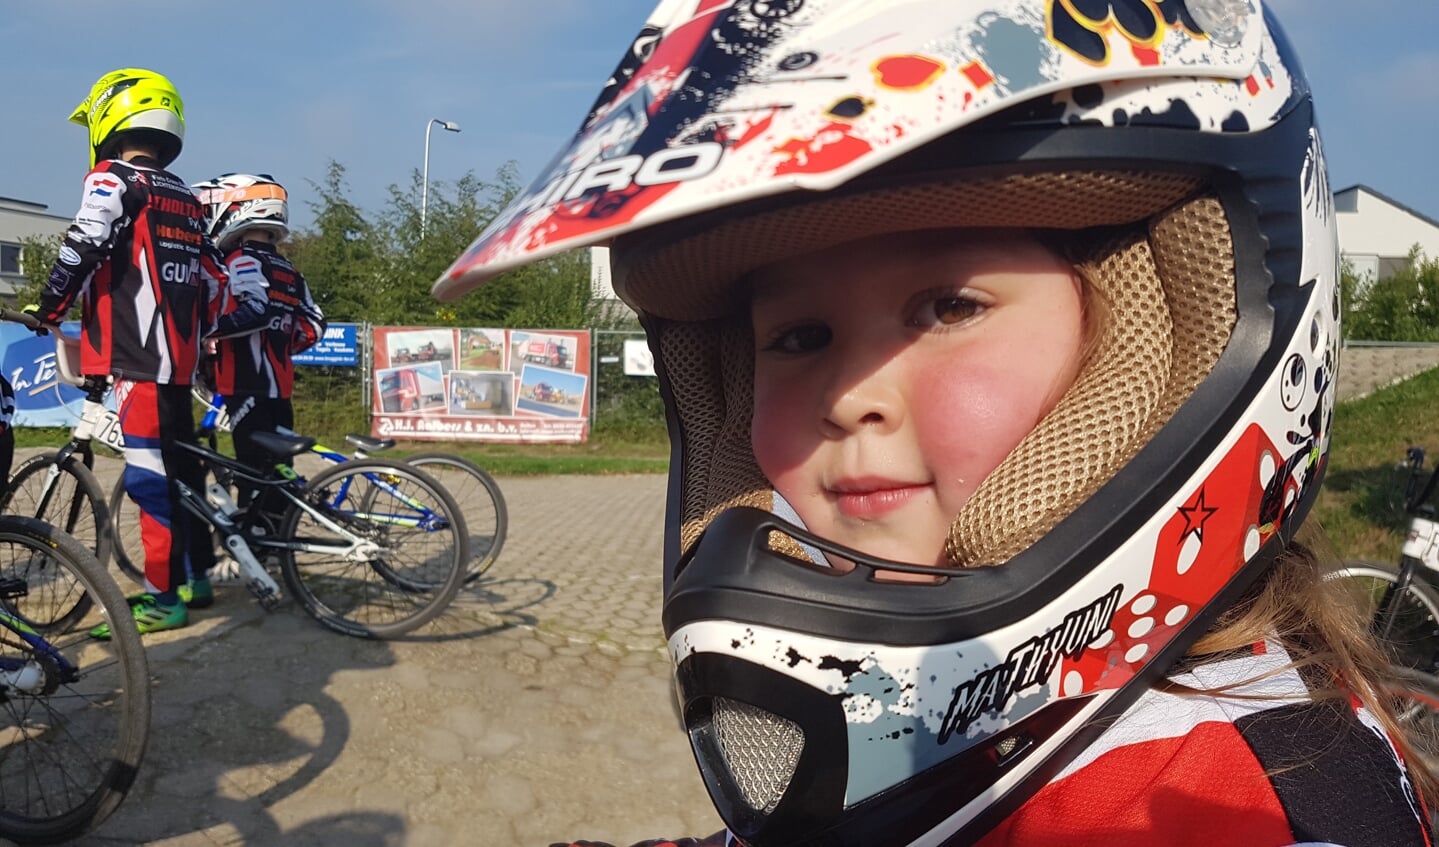 De jongste deelnemer aan de clinic is het 4-jarige talent Zoë van Gessel. foto: Kyra Broshuis